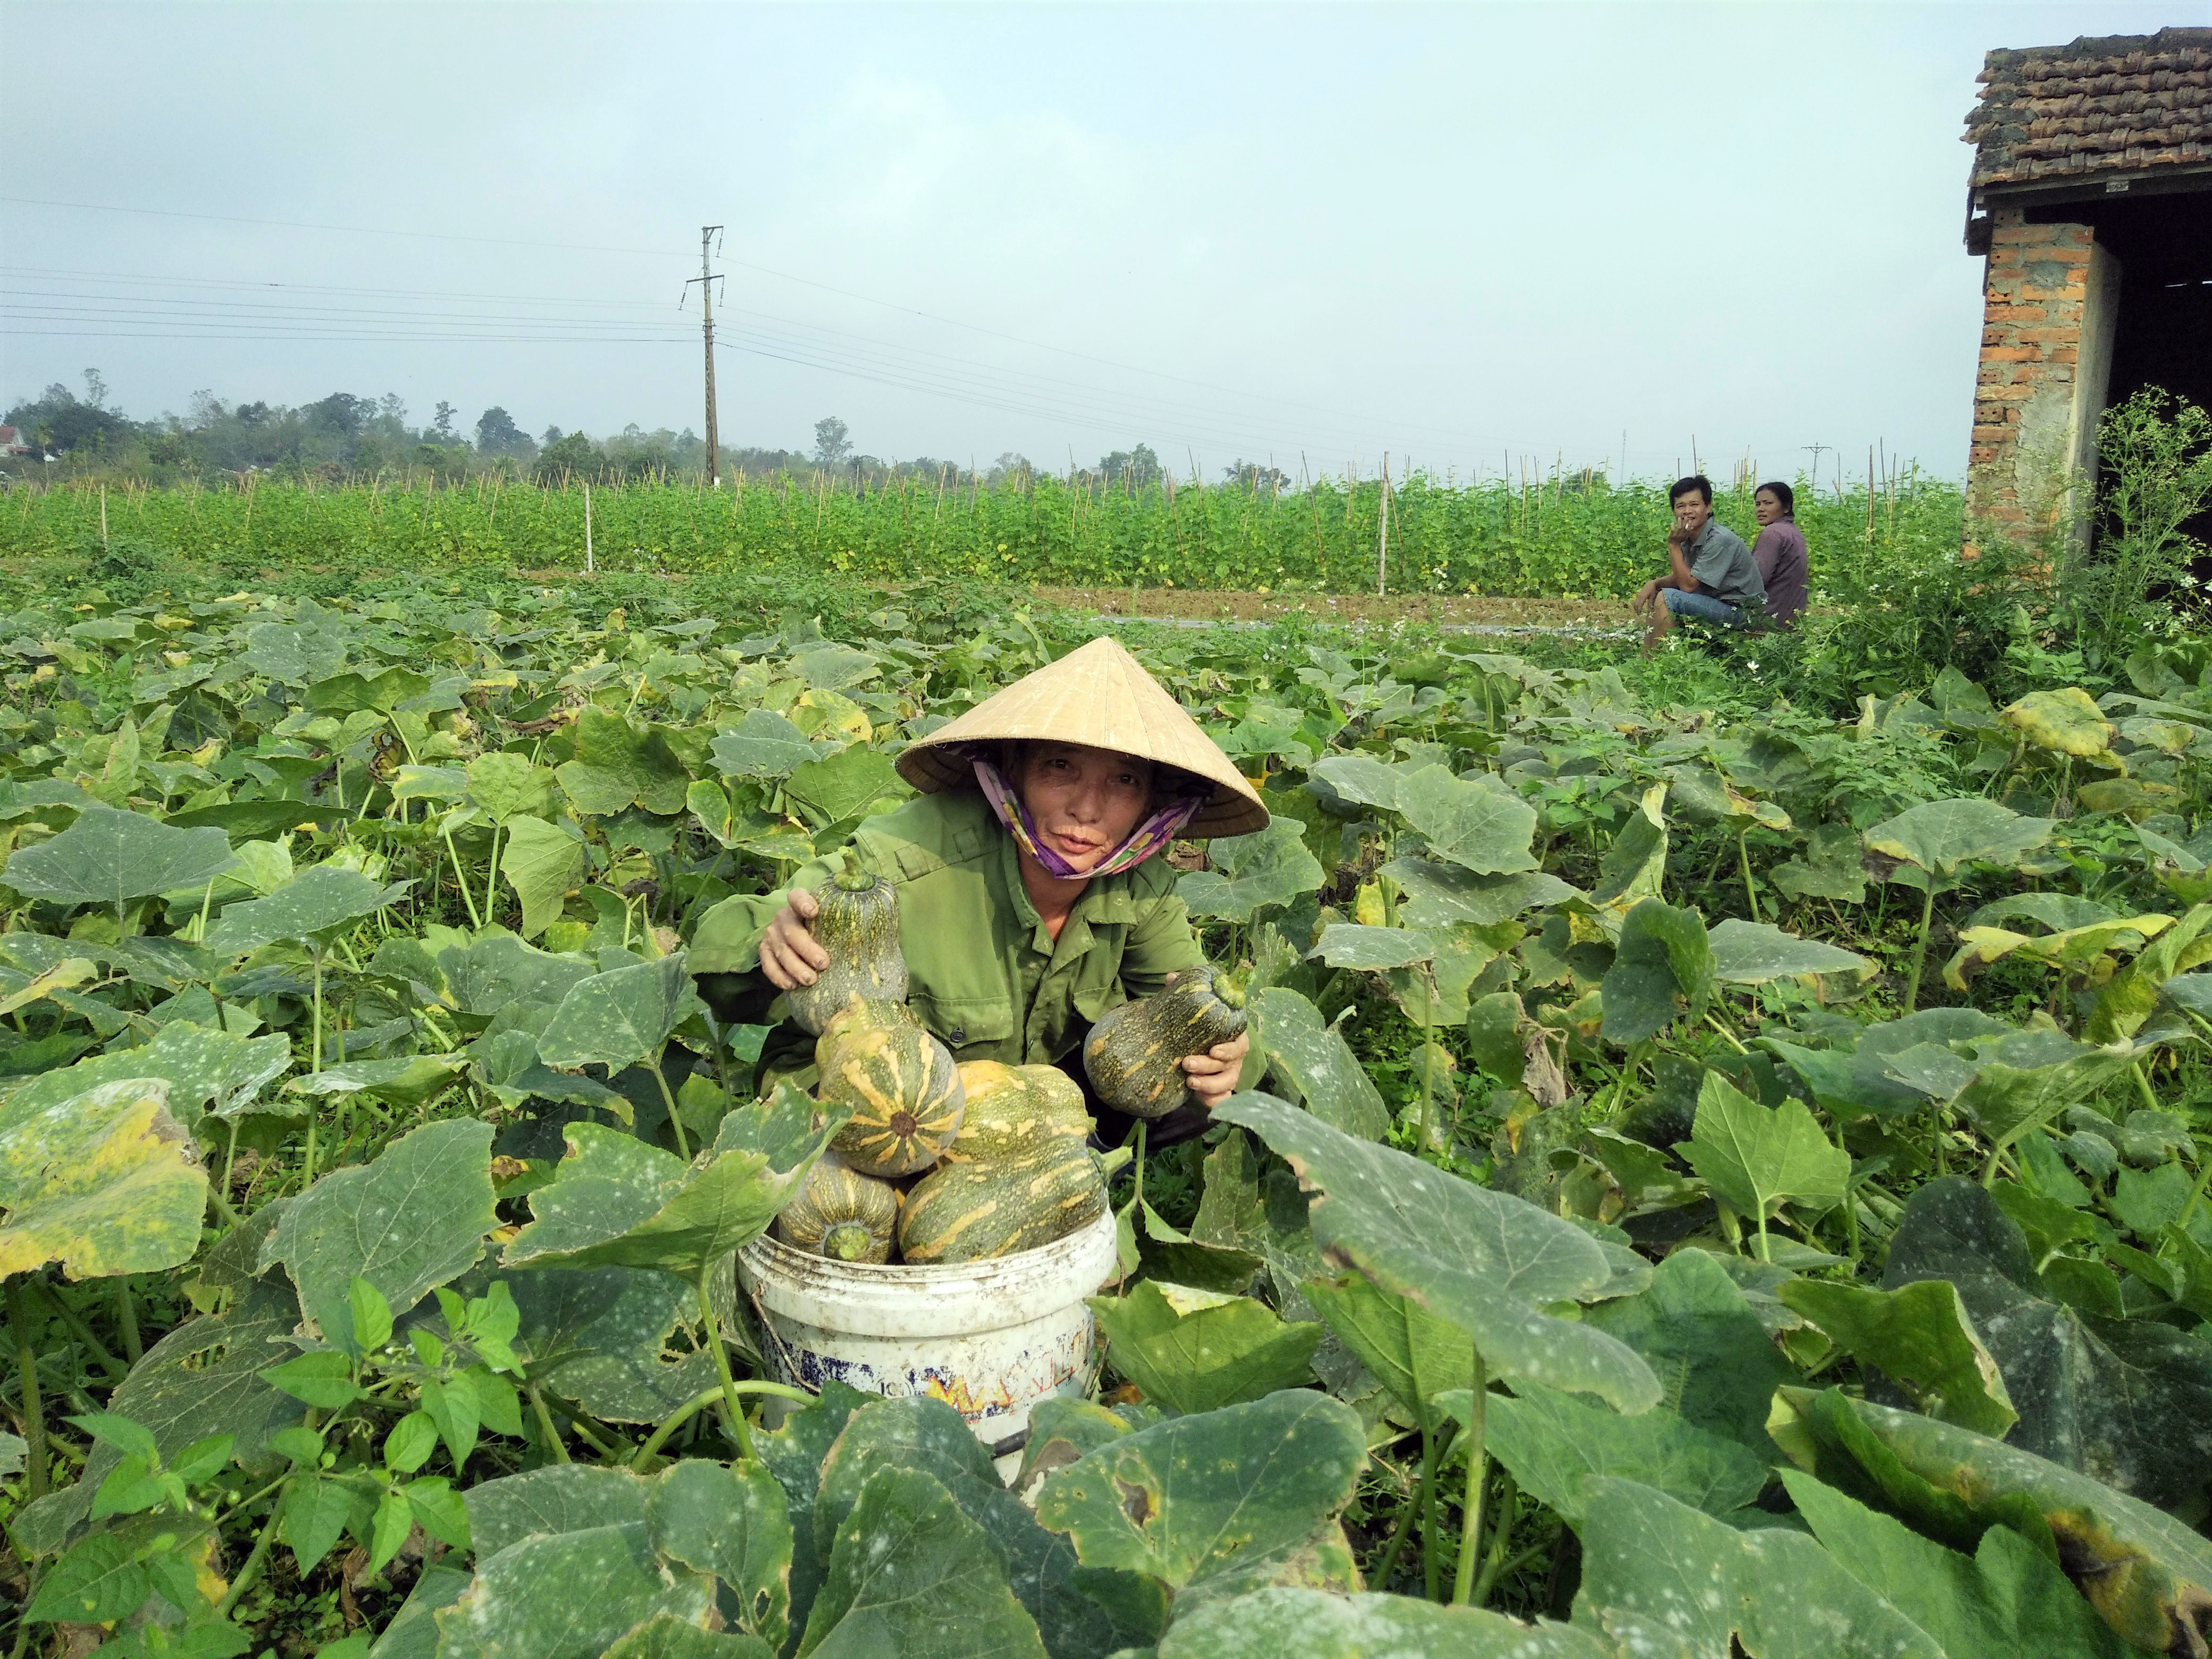 Vụ đông năm nay gia đình bà Nguyễn Thị Toàn, thôn 1/5 xã Cẩm Sơn trồng 3 sào bí đỏ trên đất bãi. Ảnh: Thái Hiền